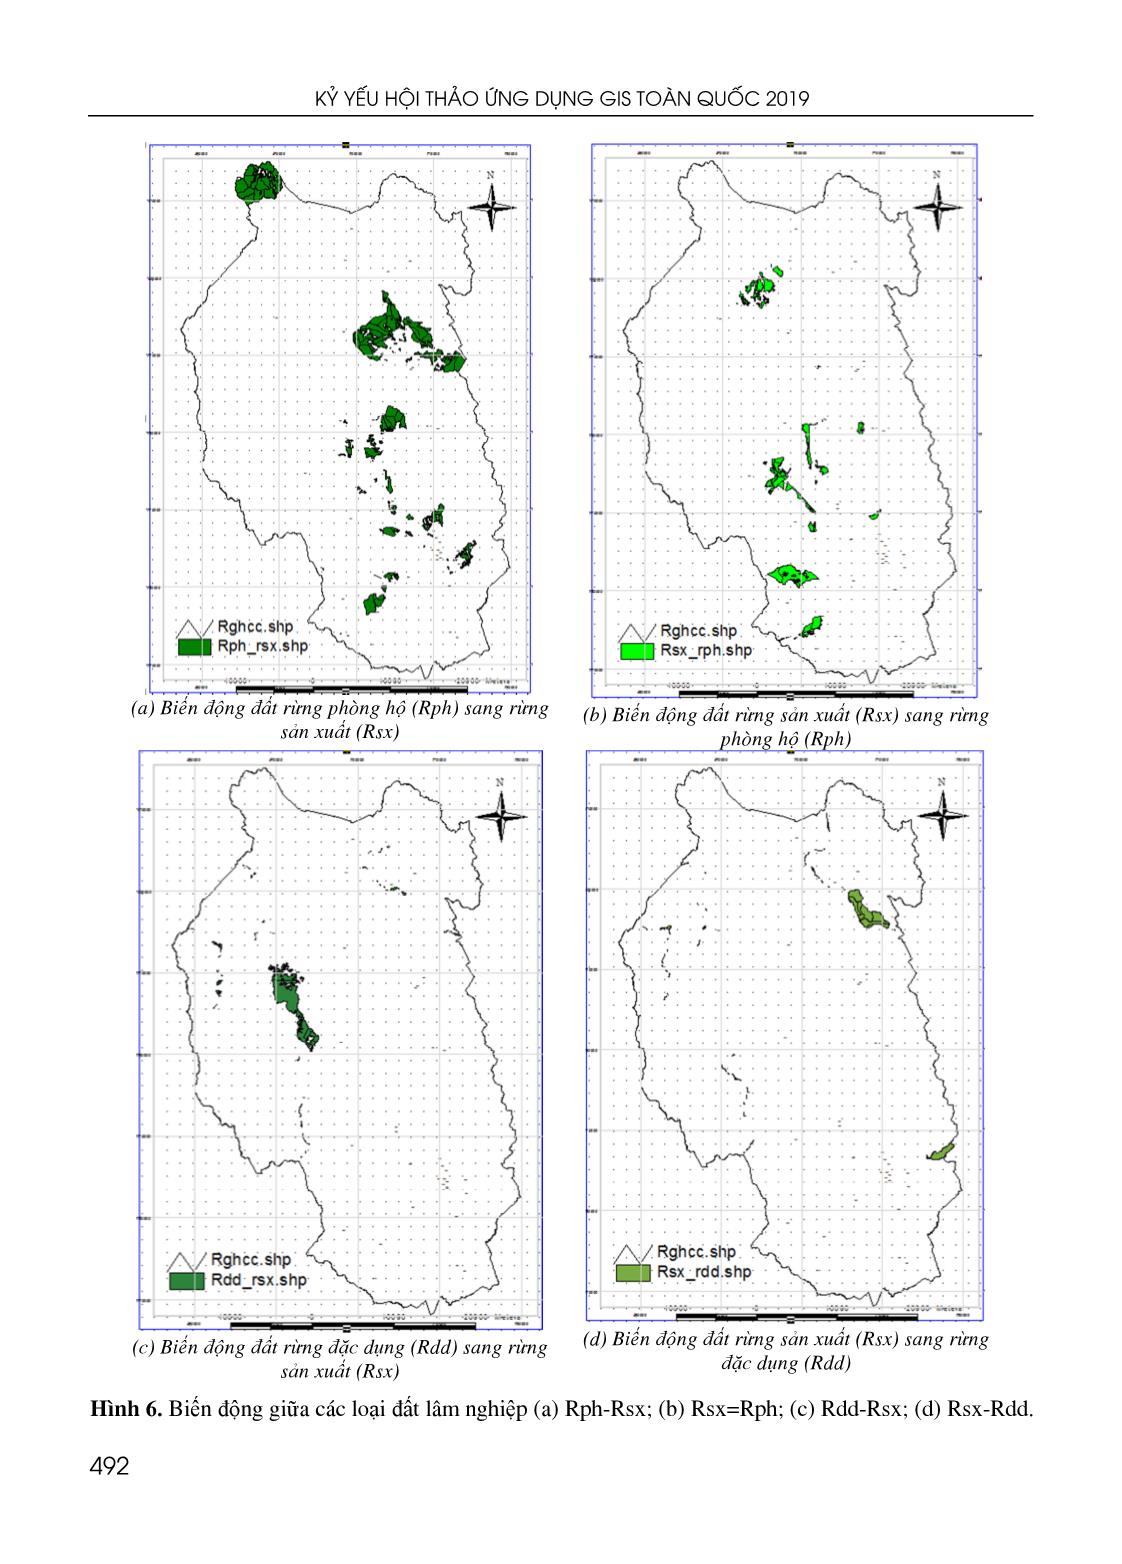 Ứng dụng GIS đánh giá biến động diện tích đất lâm nghiệp huyện Kbang, tỉnh Gia Lai và đề xuất giải pháp quản lý bền vững trang 7